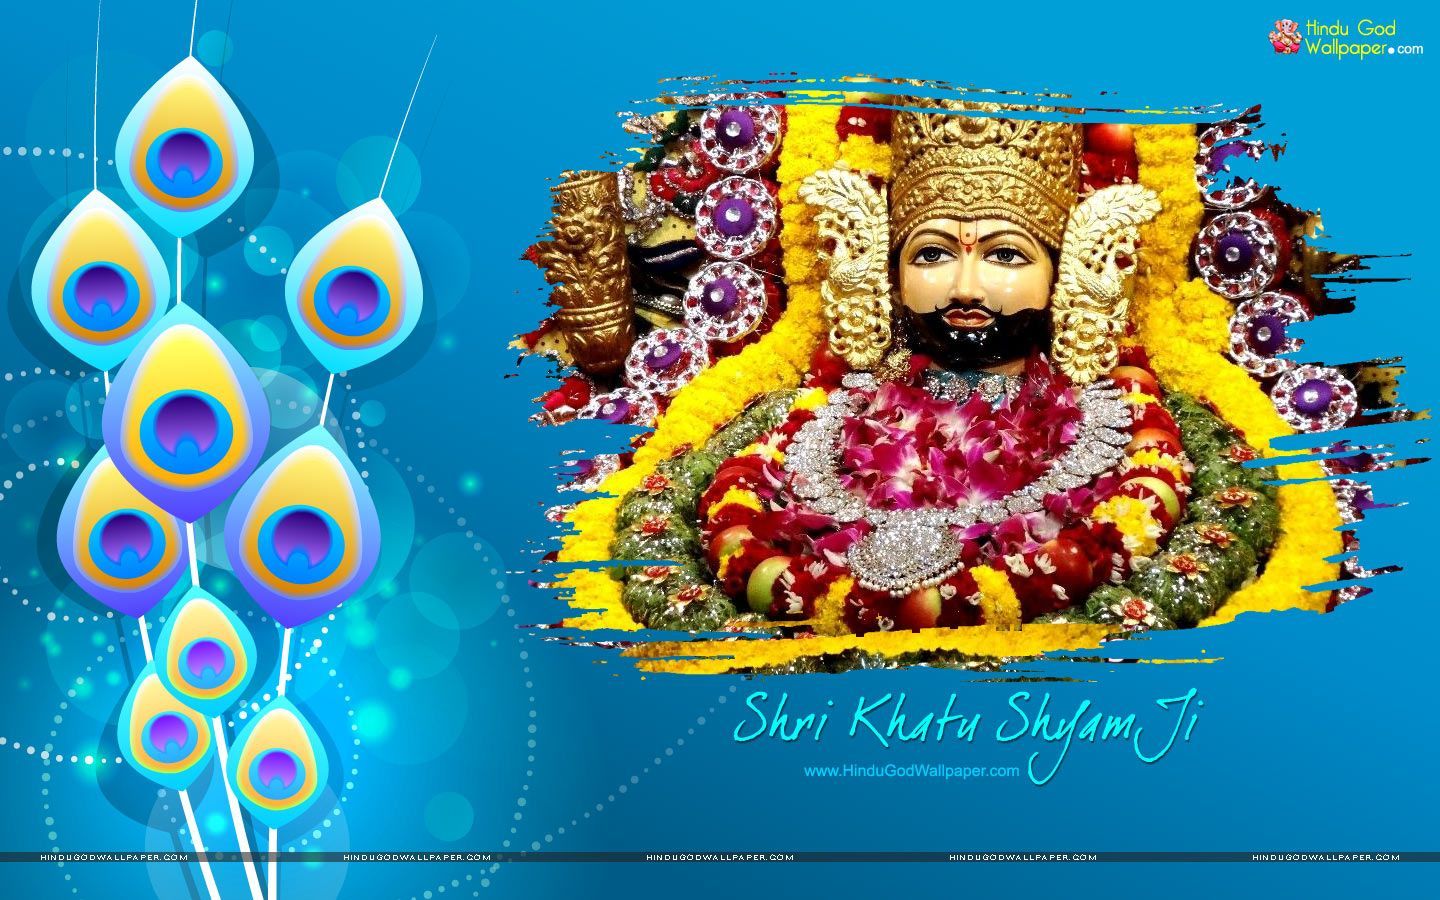 Khatu Shyam Wallpaper for PC Desktop Download. Wallpaper pc